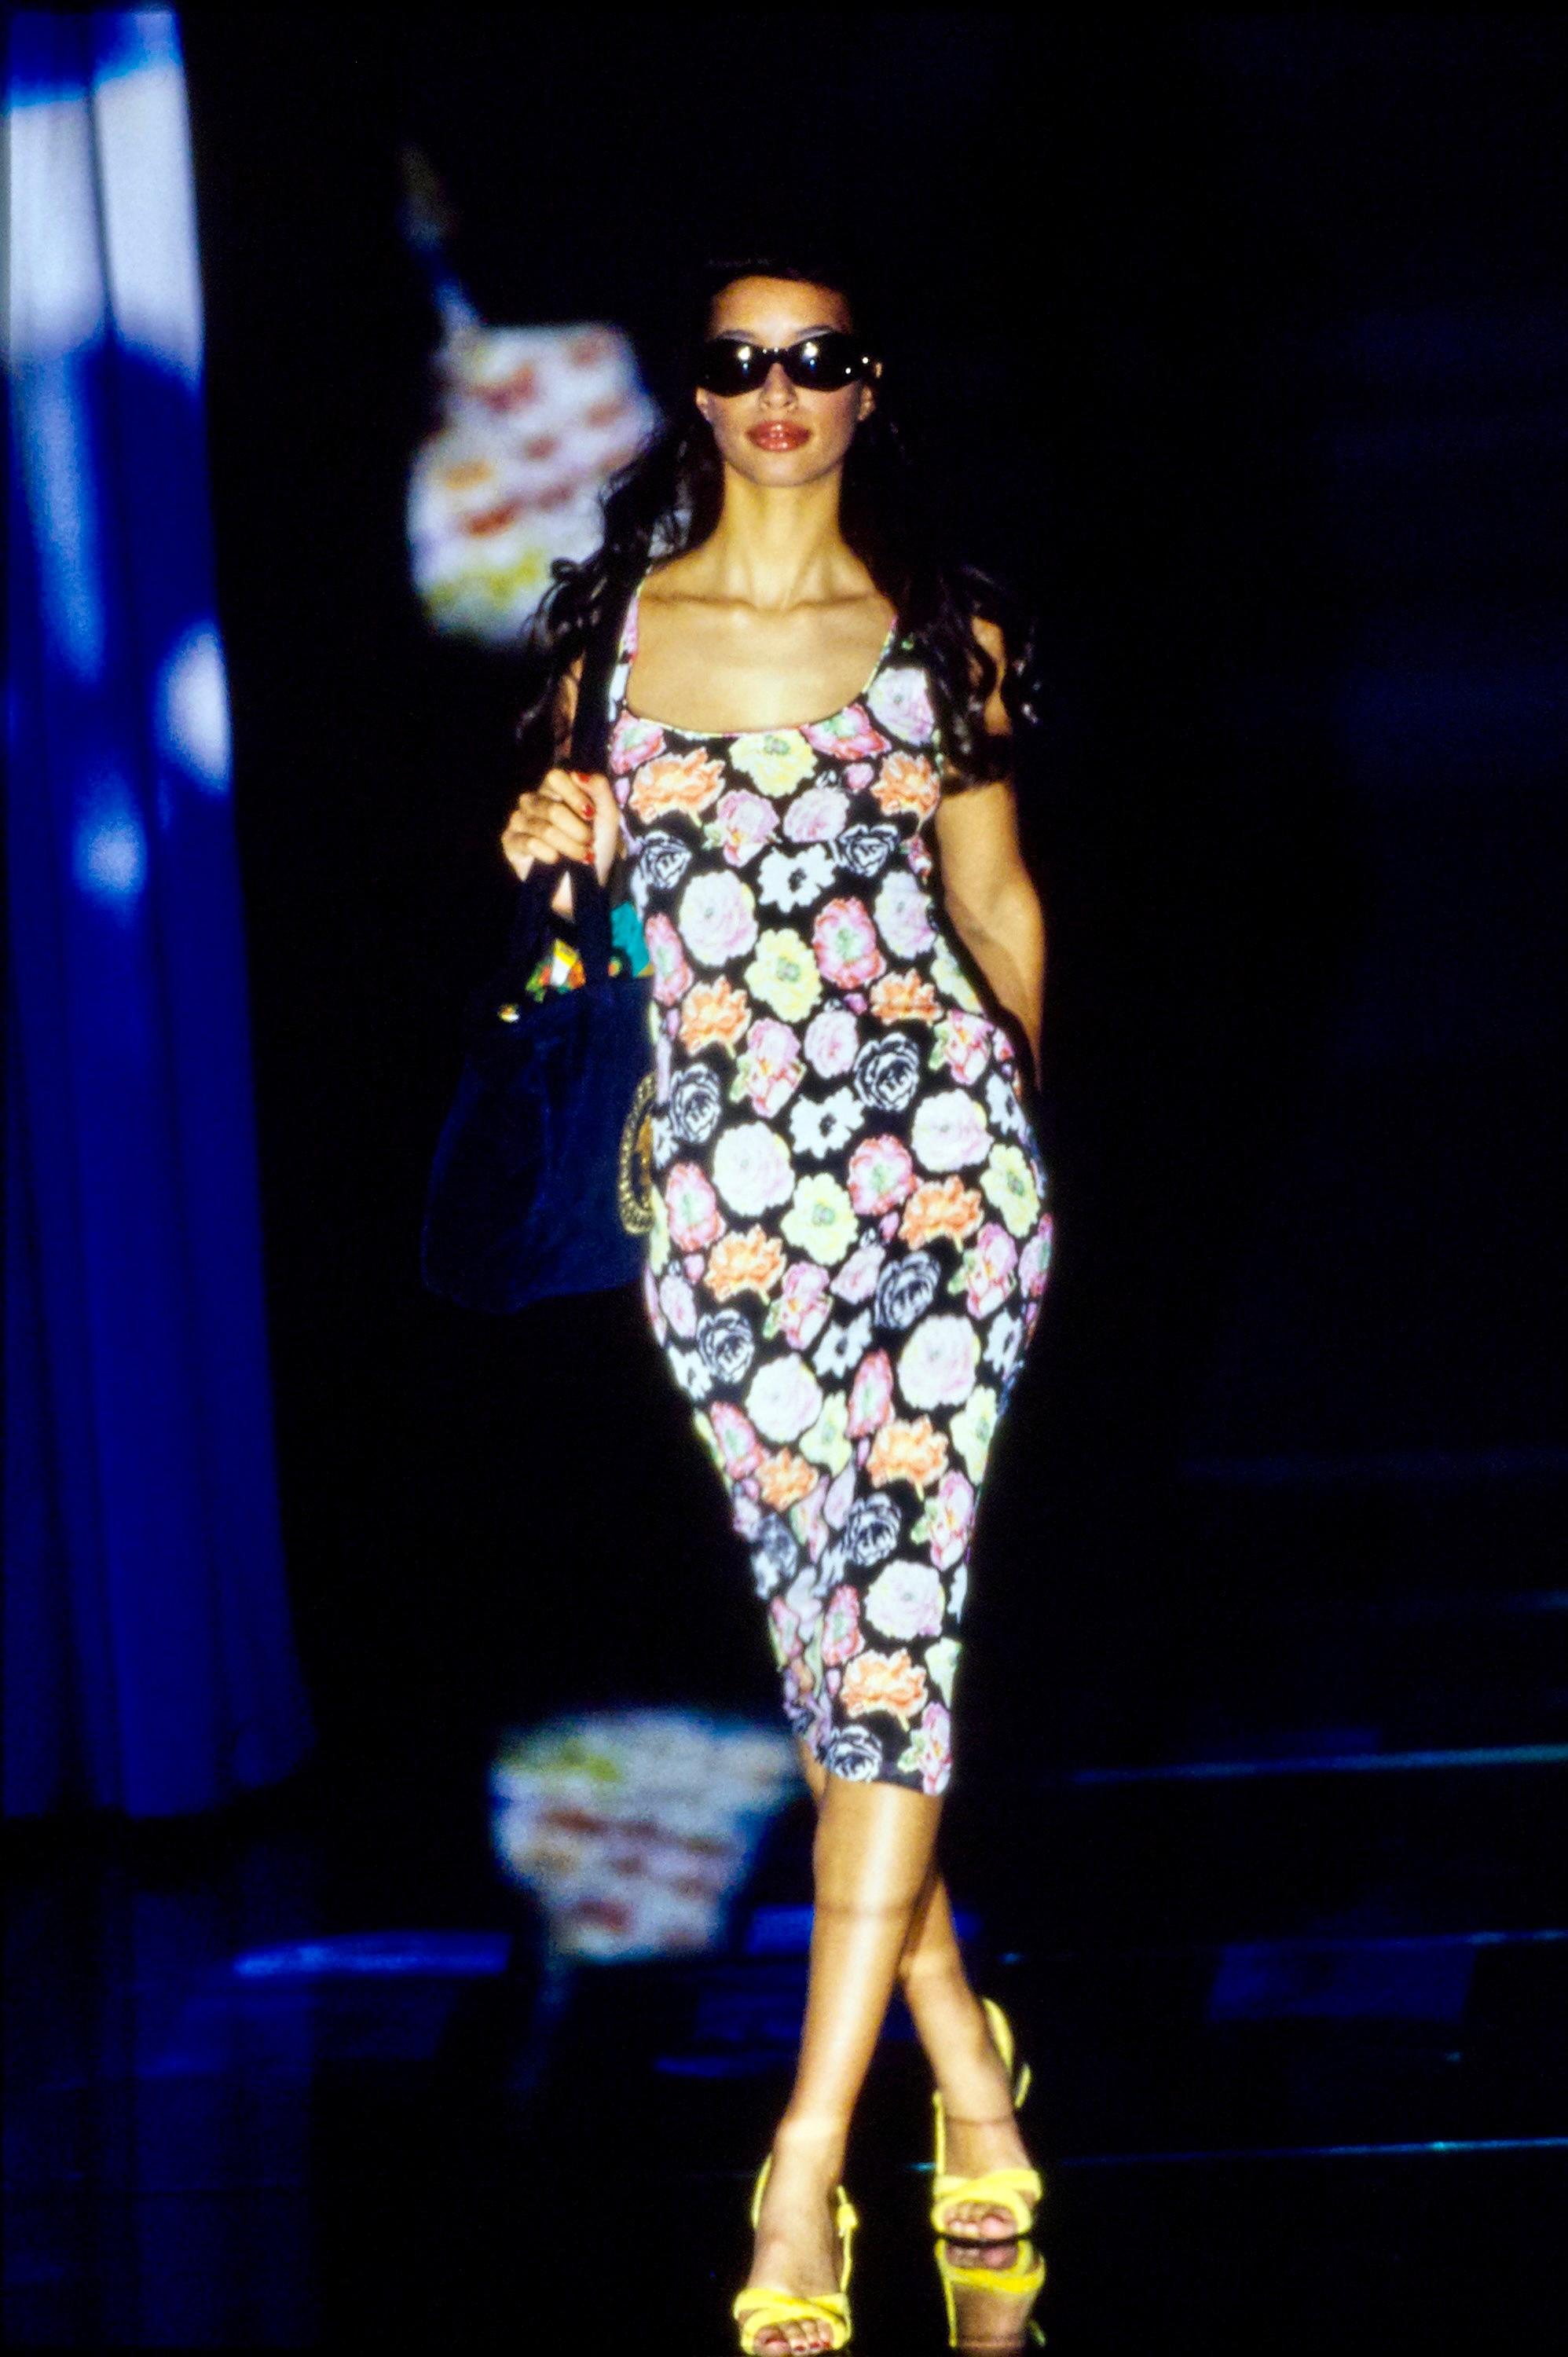 Gianni Versace présente une robe extensible semi-transparente à imprimé floral prête à défiler. Cette pièce a fait ses débuts sur Brandi Quinones lors du look 11 de la présentation du défilé S/S 1995. Gianni a décrit cette collection comme 